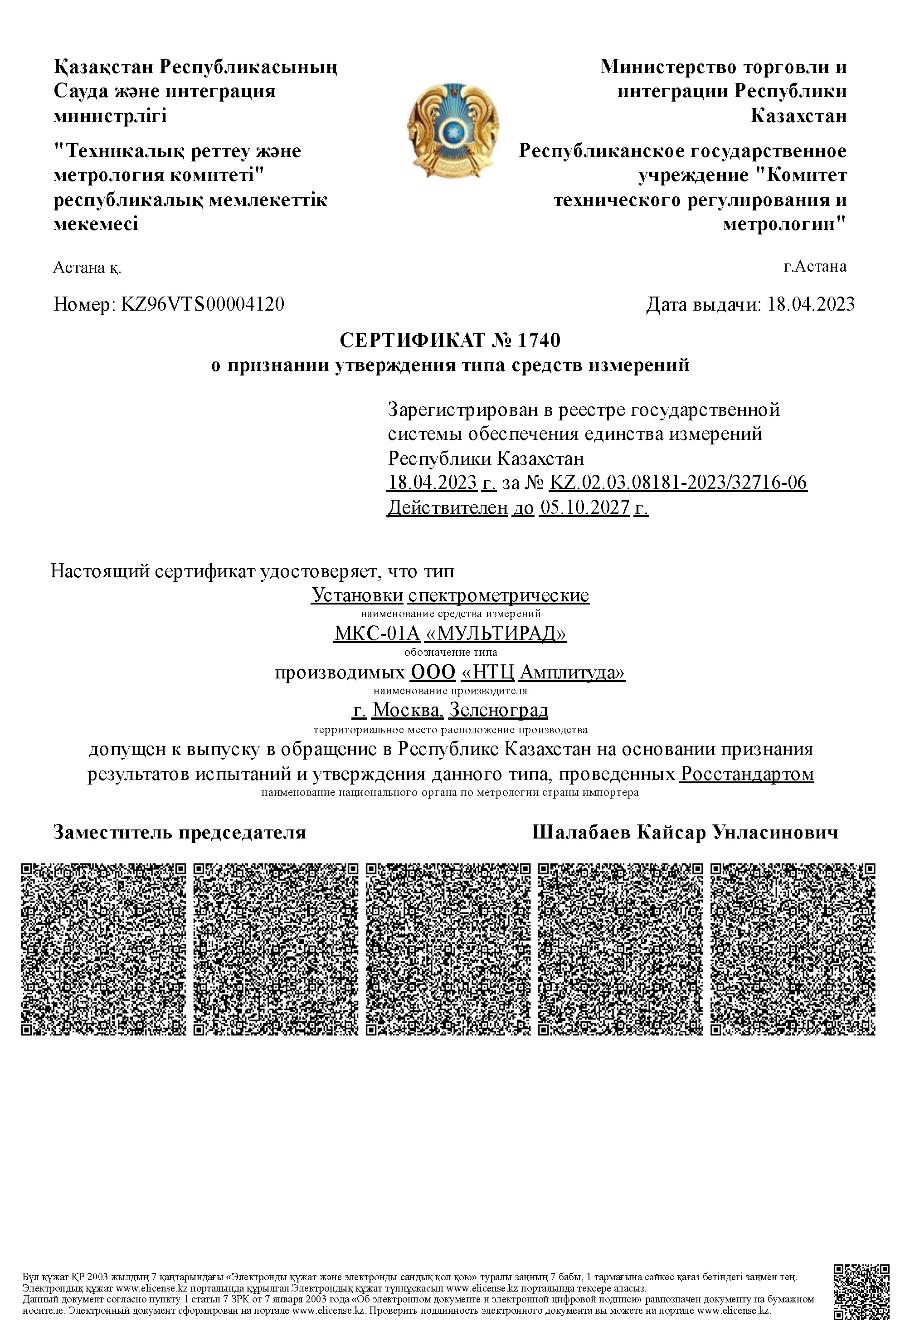 Получен Сертификат о признании утверждения типа средств измерений на установки спектрометрические МКС-01А «Мультирад» в Республике Казахстан